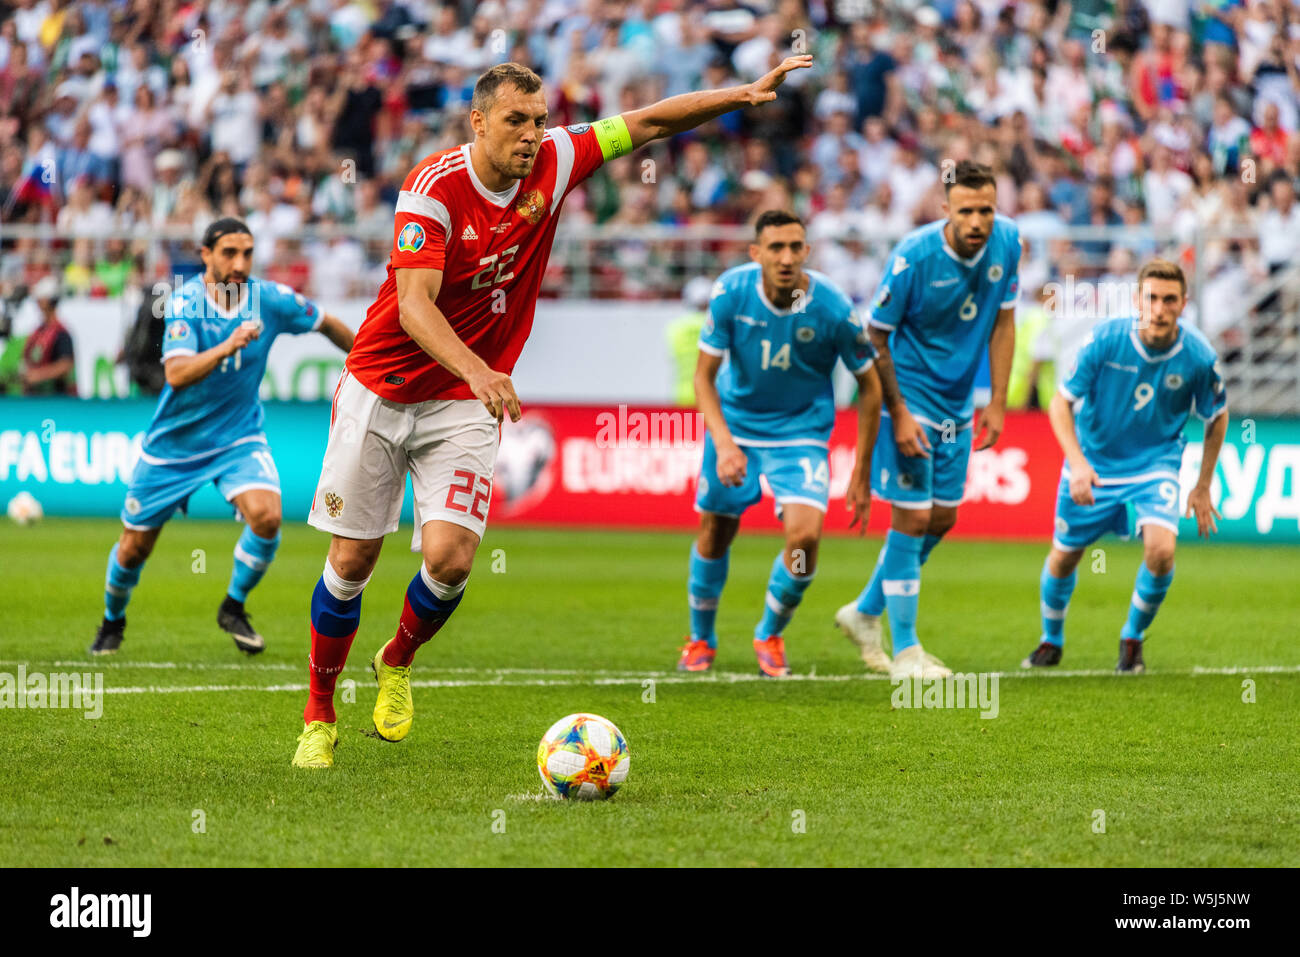 Knittelfeld, Russland - Juni 8, 2019. Russland Nationalstürmer Artem Dzyuba ein strafstoss während der UEFA EURO 2020 Qualifikation Russland v Stockfoto